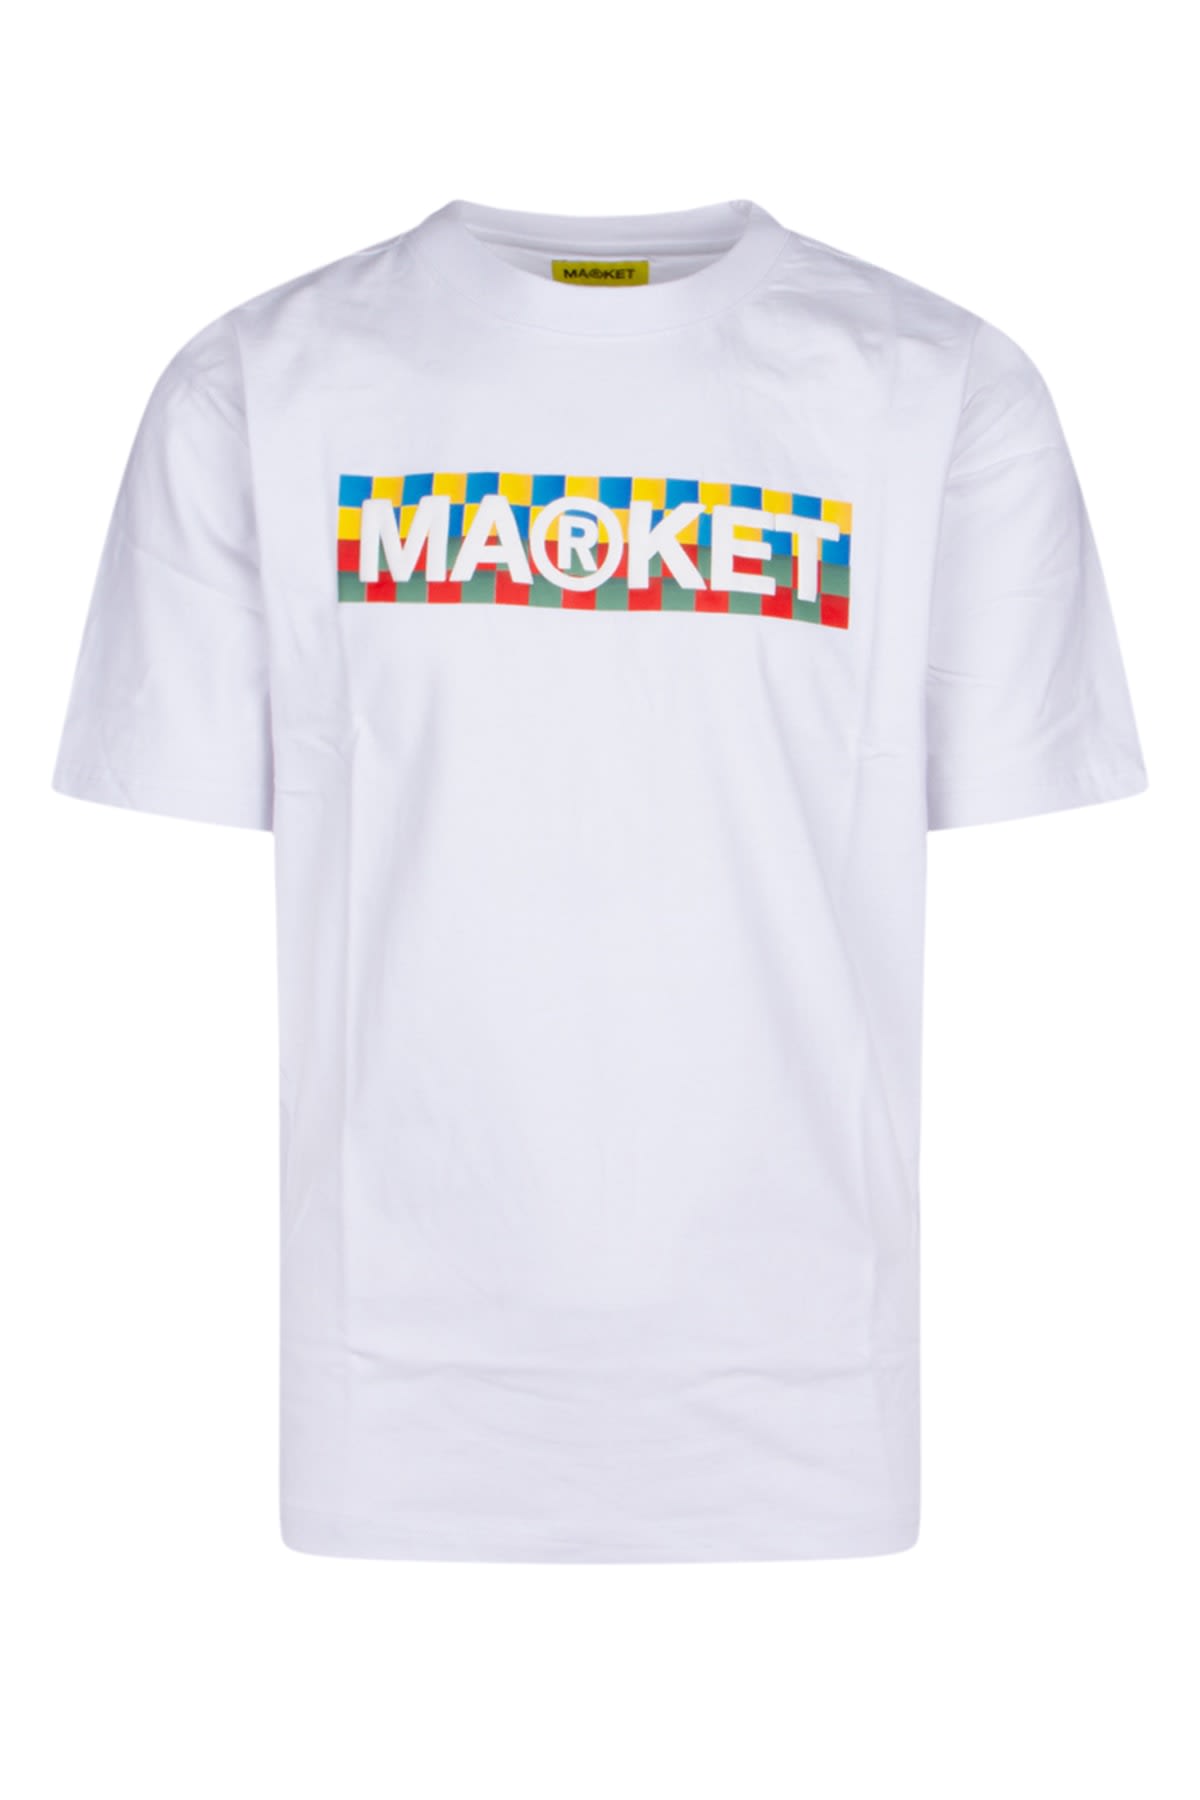 Market T-shirt